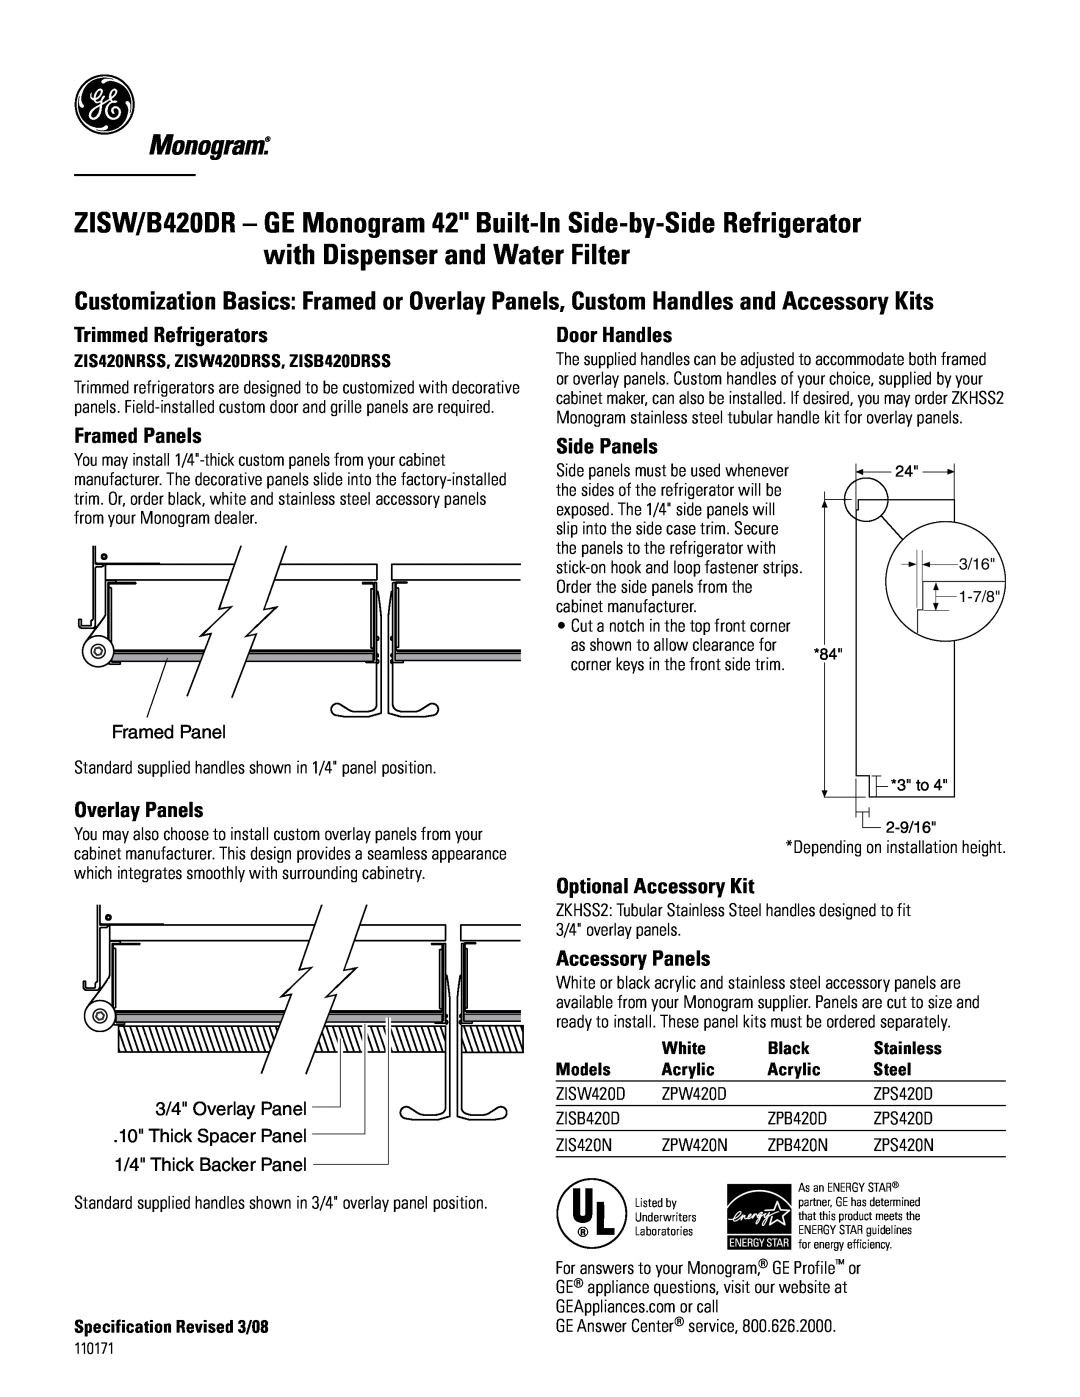 GE Monogram B420DR Trimmed Refrigerators, Framed Panels, Overlay Panels, Door Handles, Side Panels, Optional Accessory Kit 